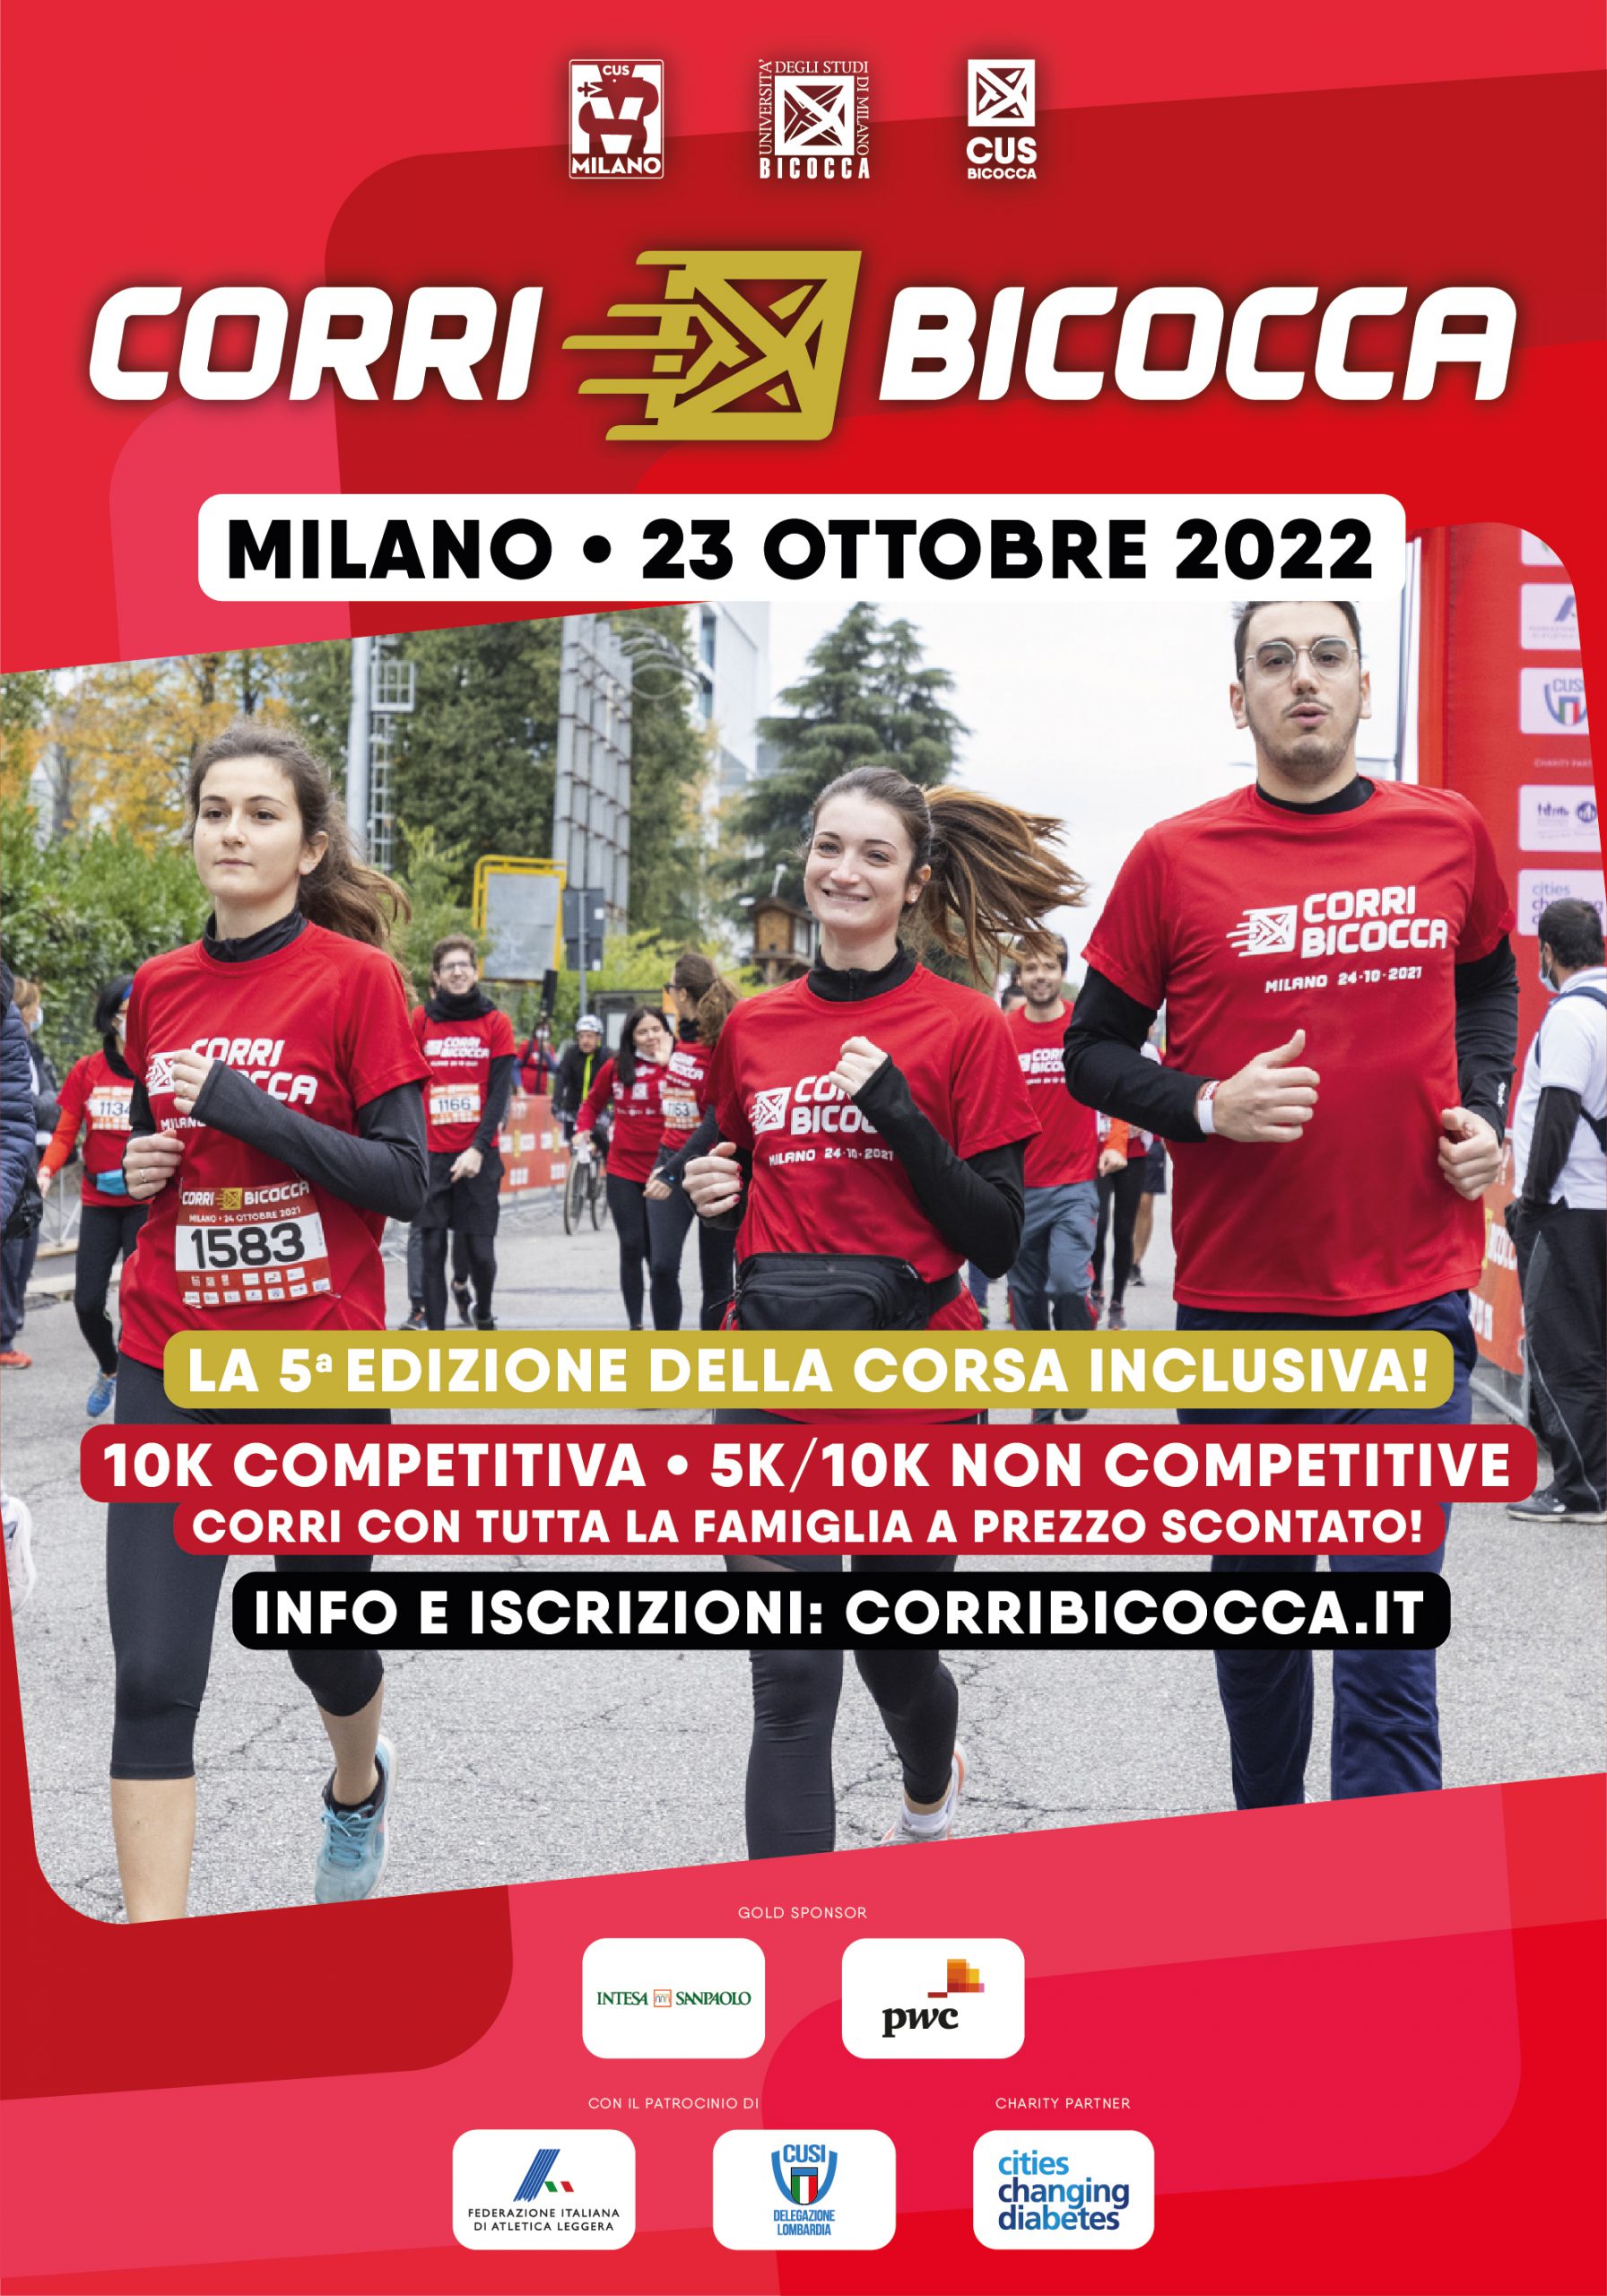 CorriBicocca 2022: la quinta edizione il 23 ottobre!